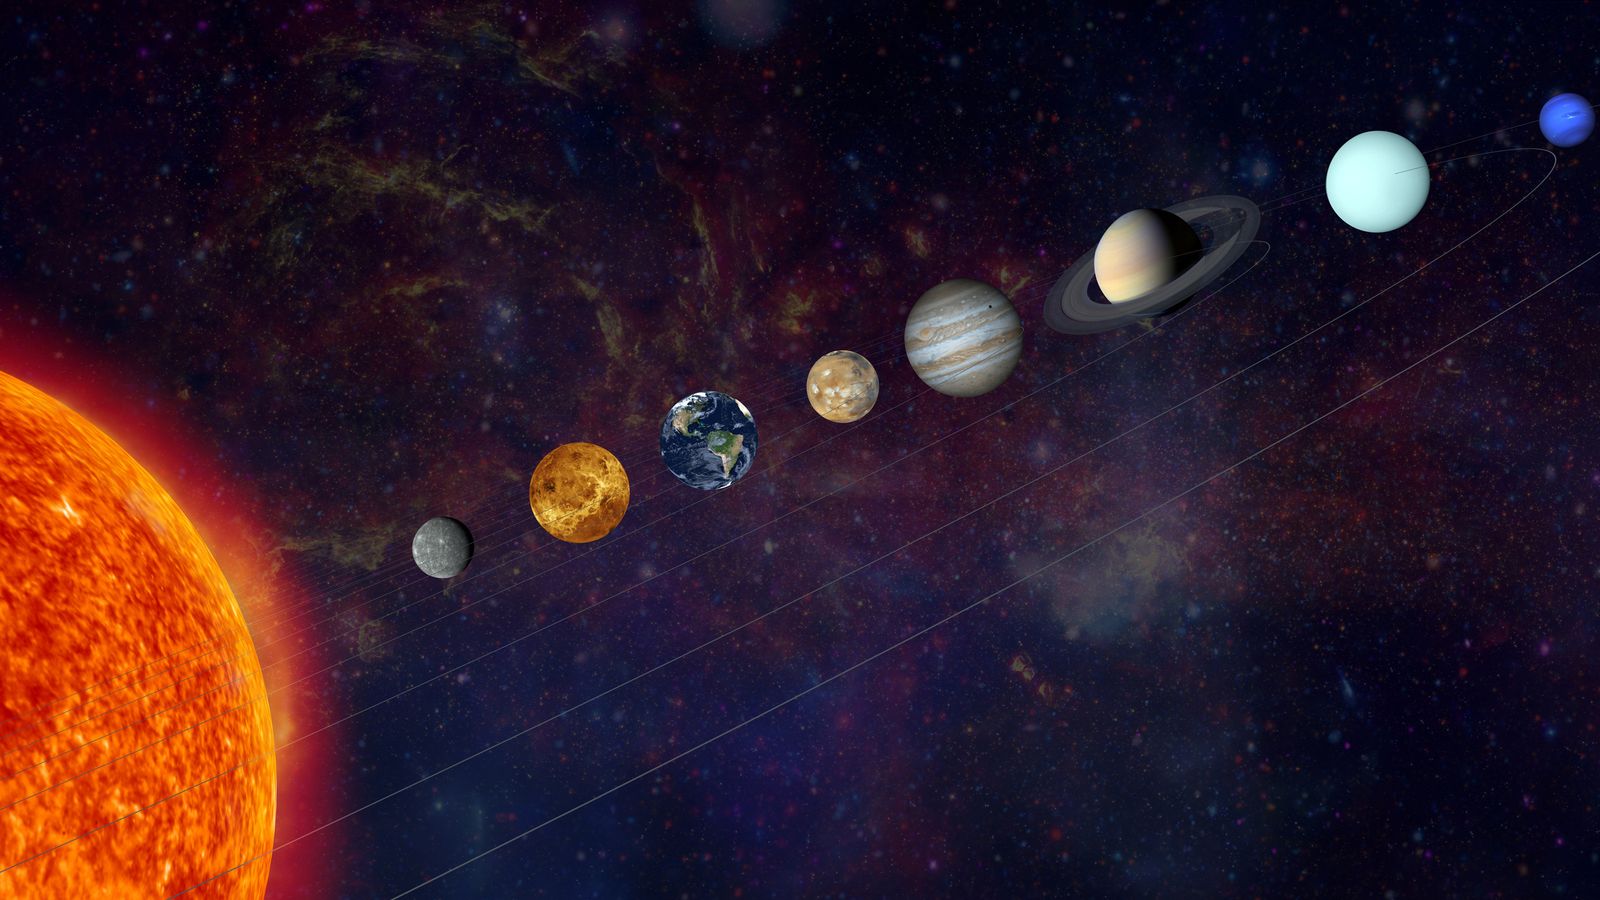 “موكب الكواكب” في السماء الليلة – ما تحتاج إلى معرفته |  أخبار العلوم والتكنولوجيا